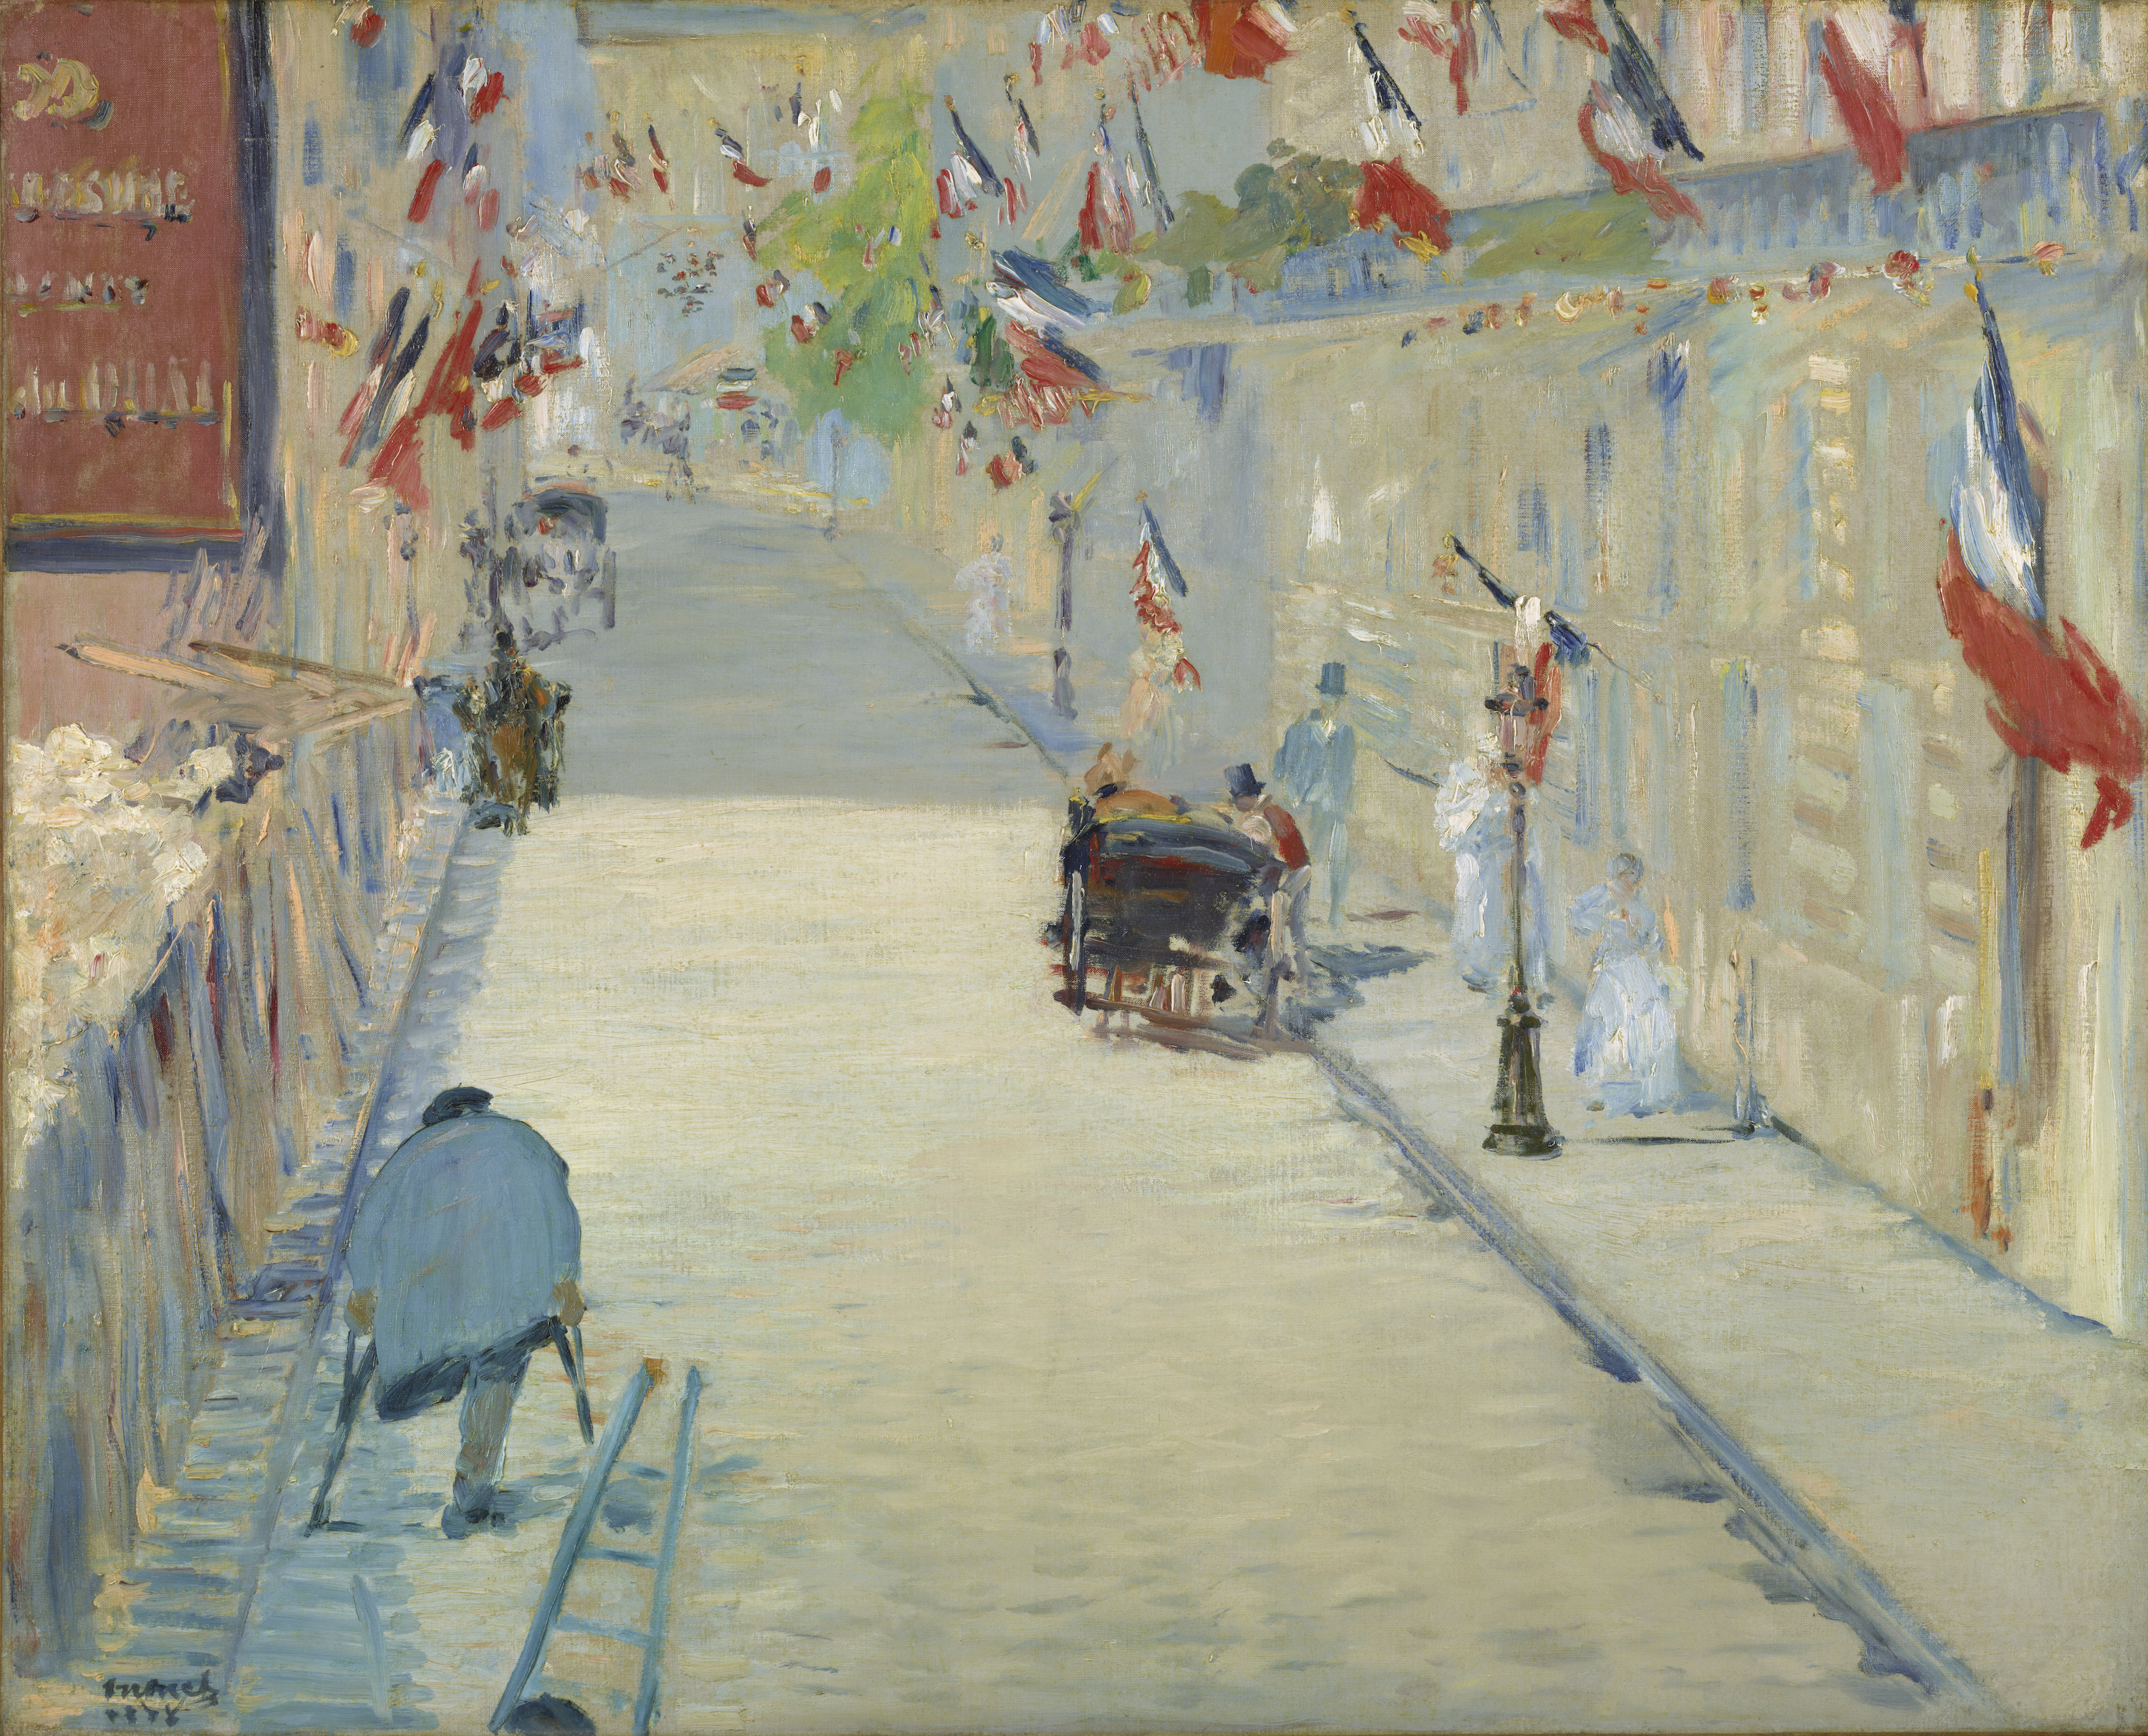 خیابان مونسیر با پرچم ها by Édouard Manet - 1878 - 80 x 65.4 cm 